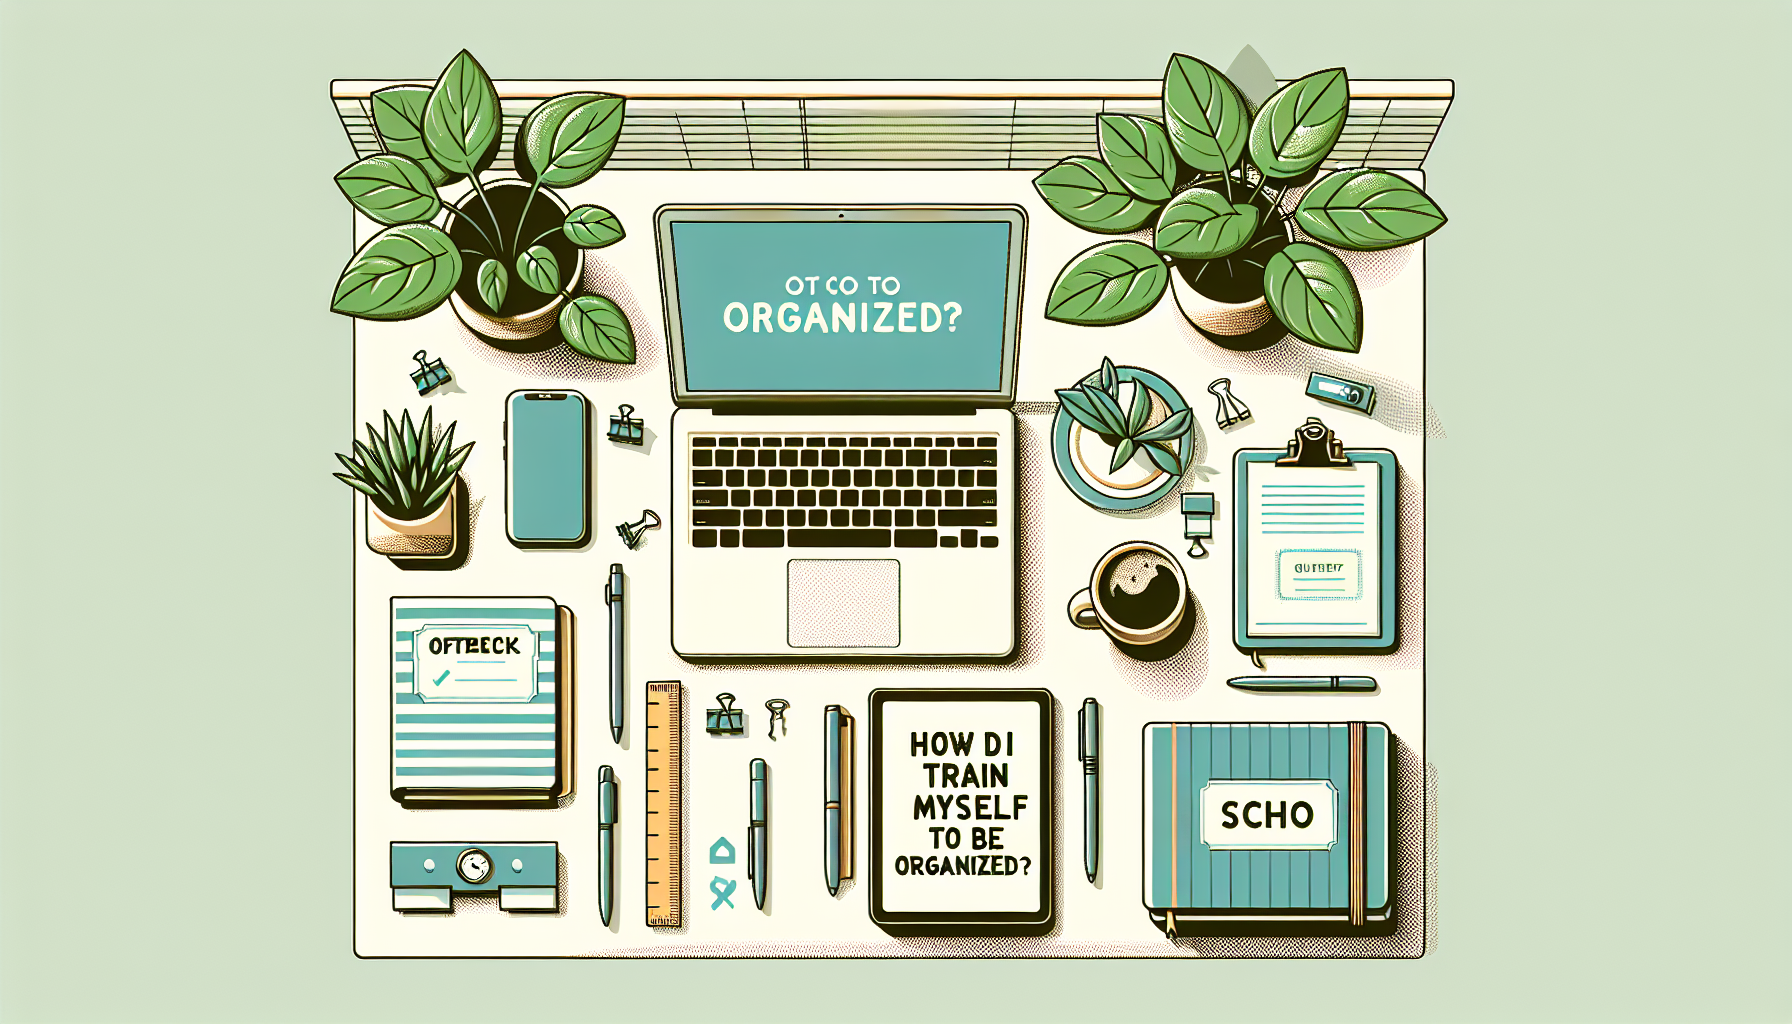 How Do I Train Myself To Be Organized?